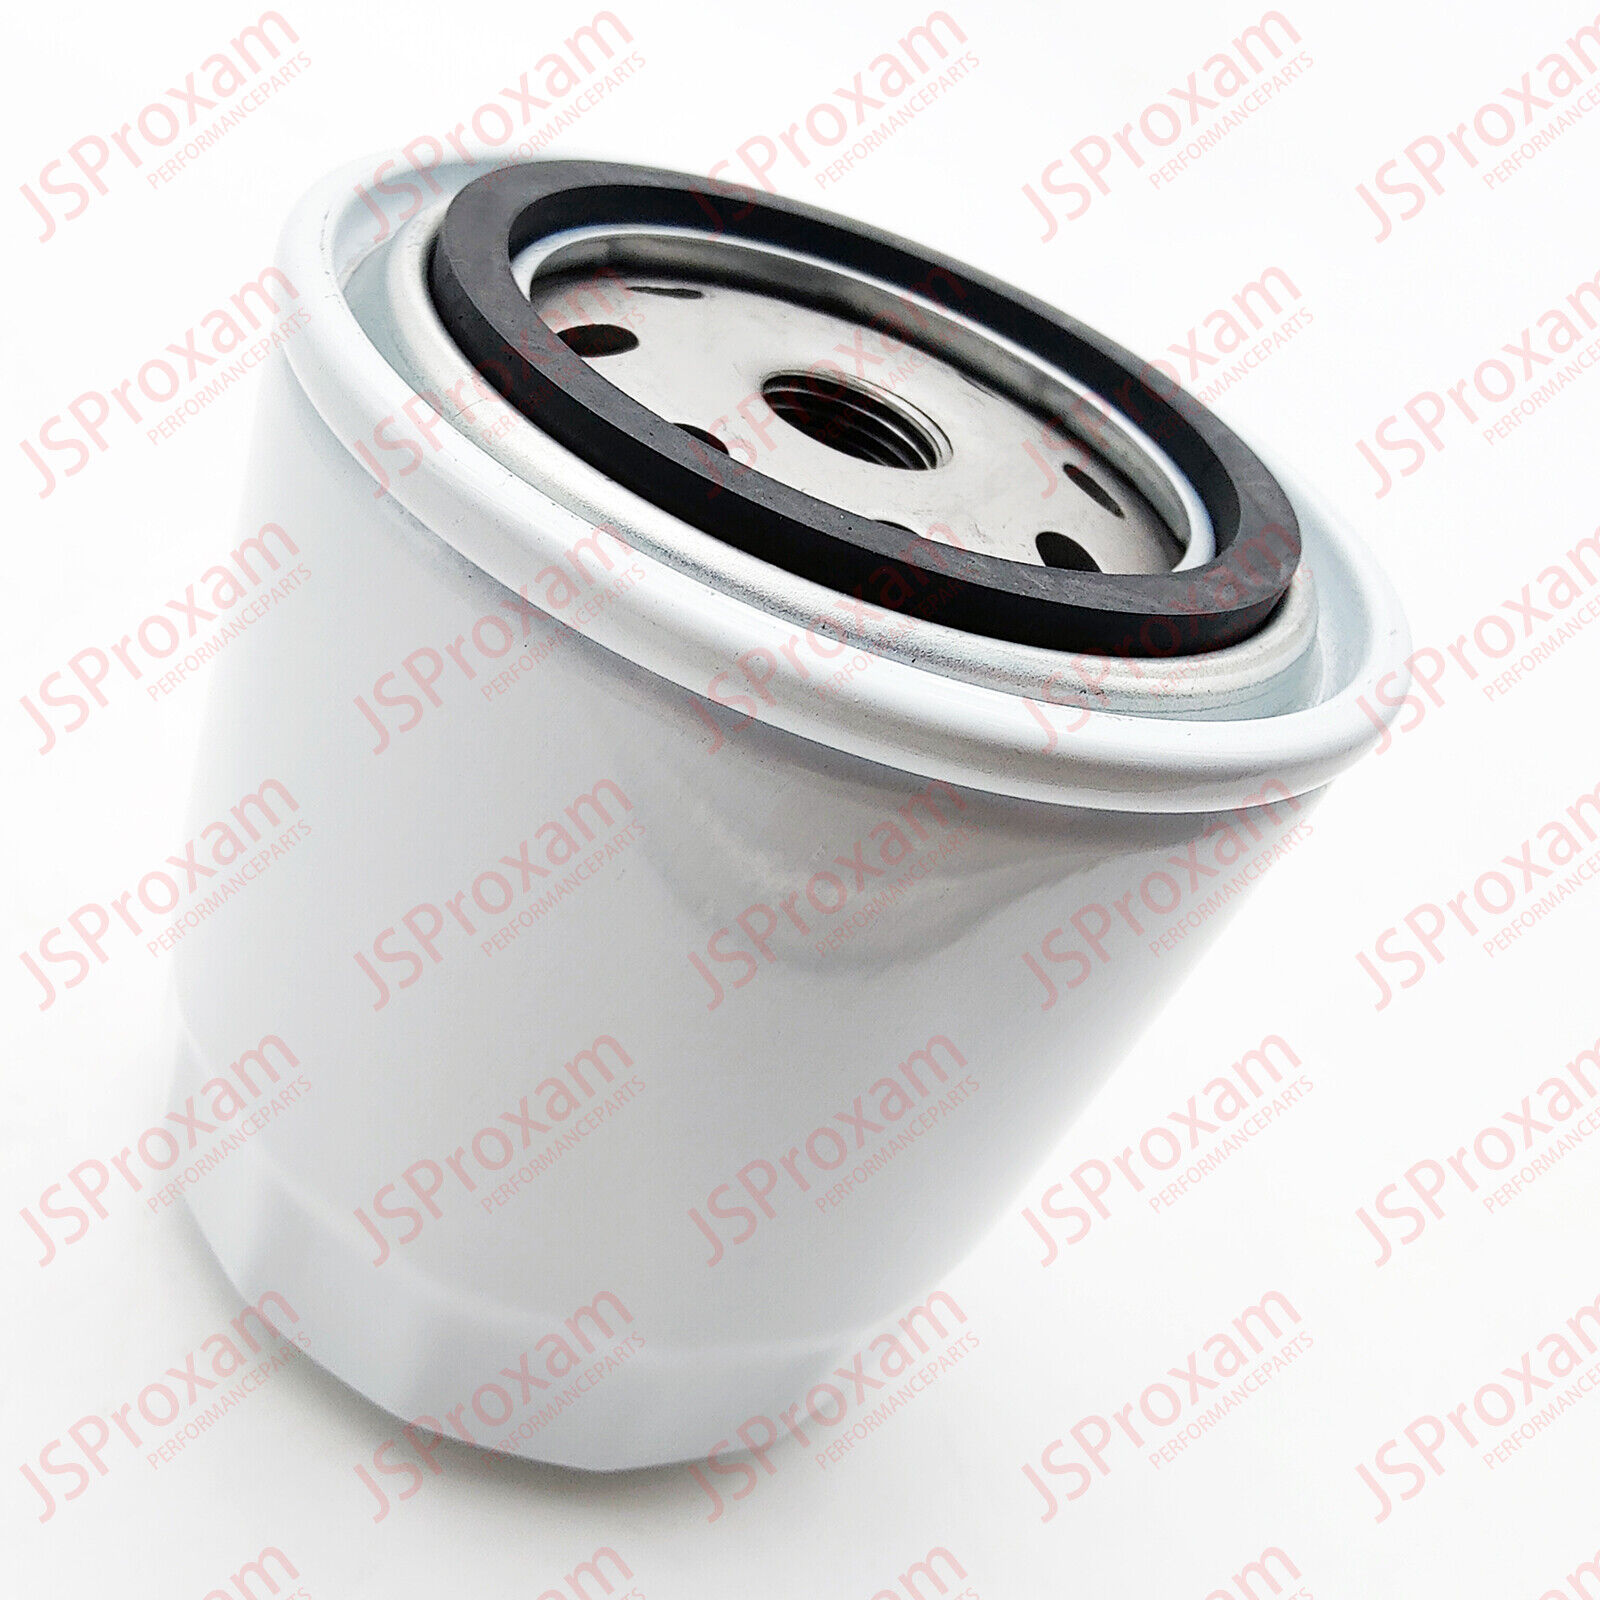 Filter-FuelFor Mercury Mercruiser Quicksilver New Part # 35-802893Q01